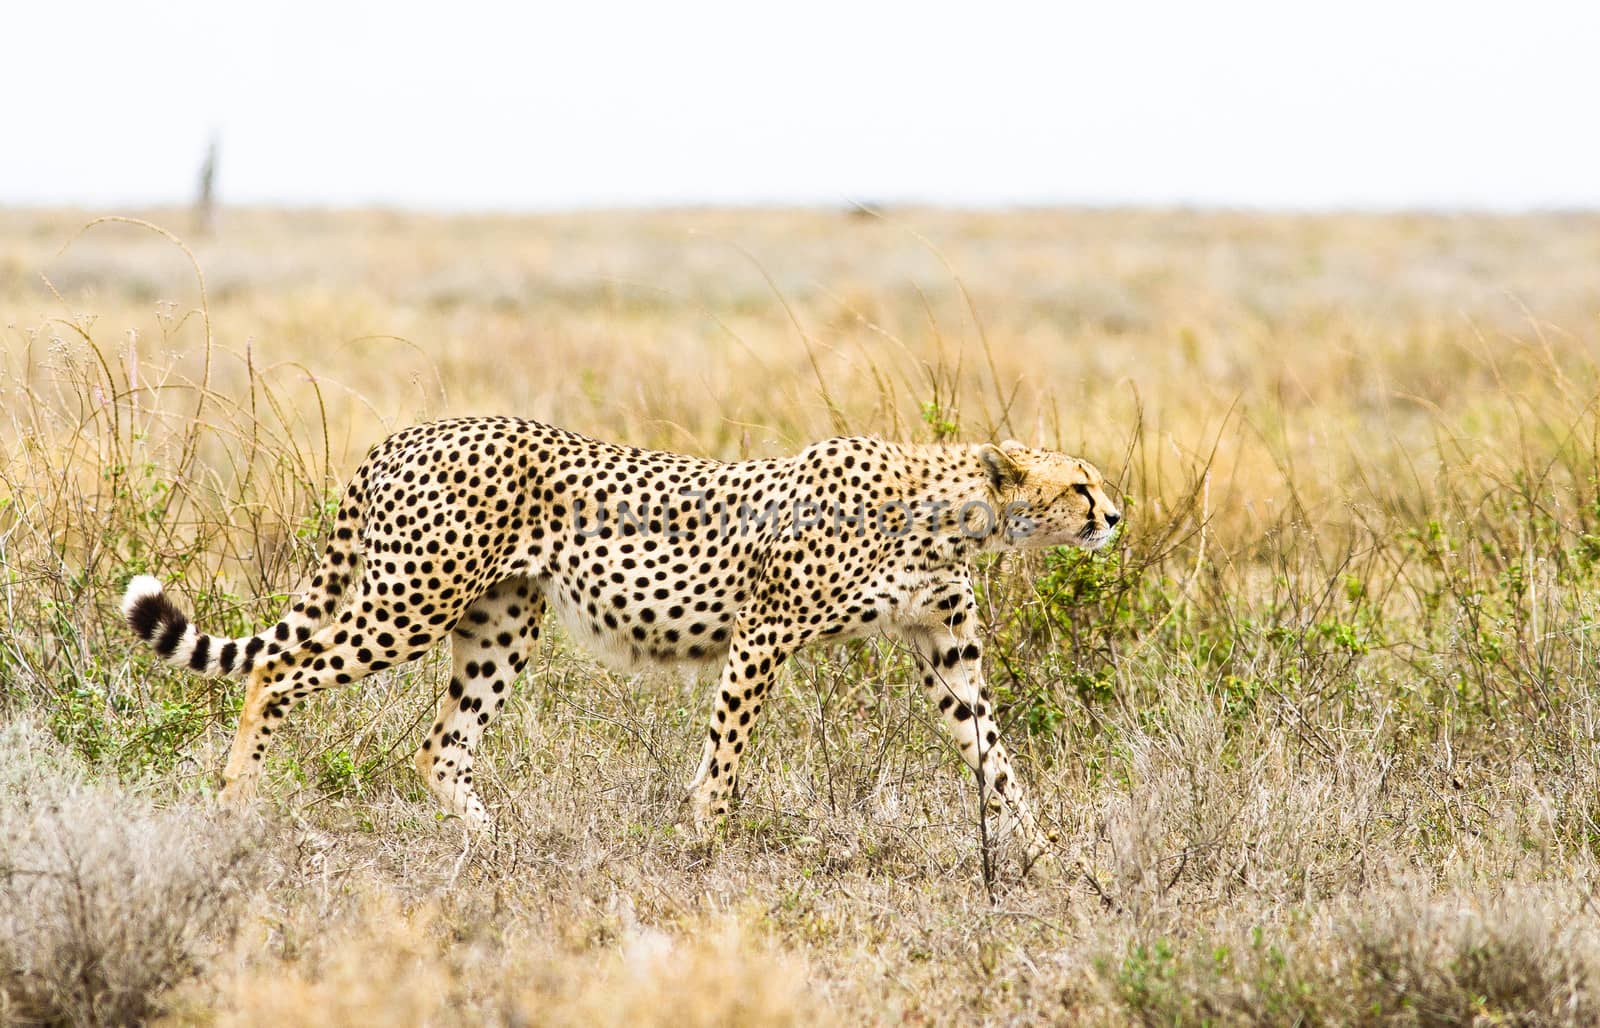 Wild cheetah in the Tanzanian Serengetti